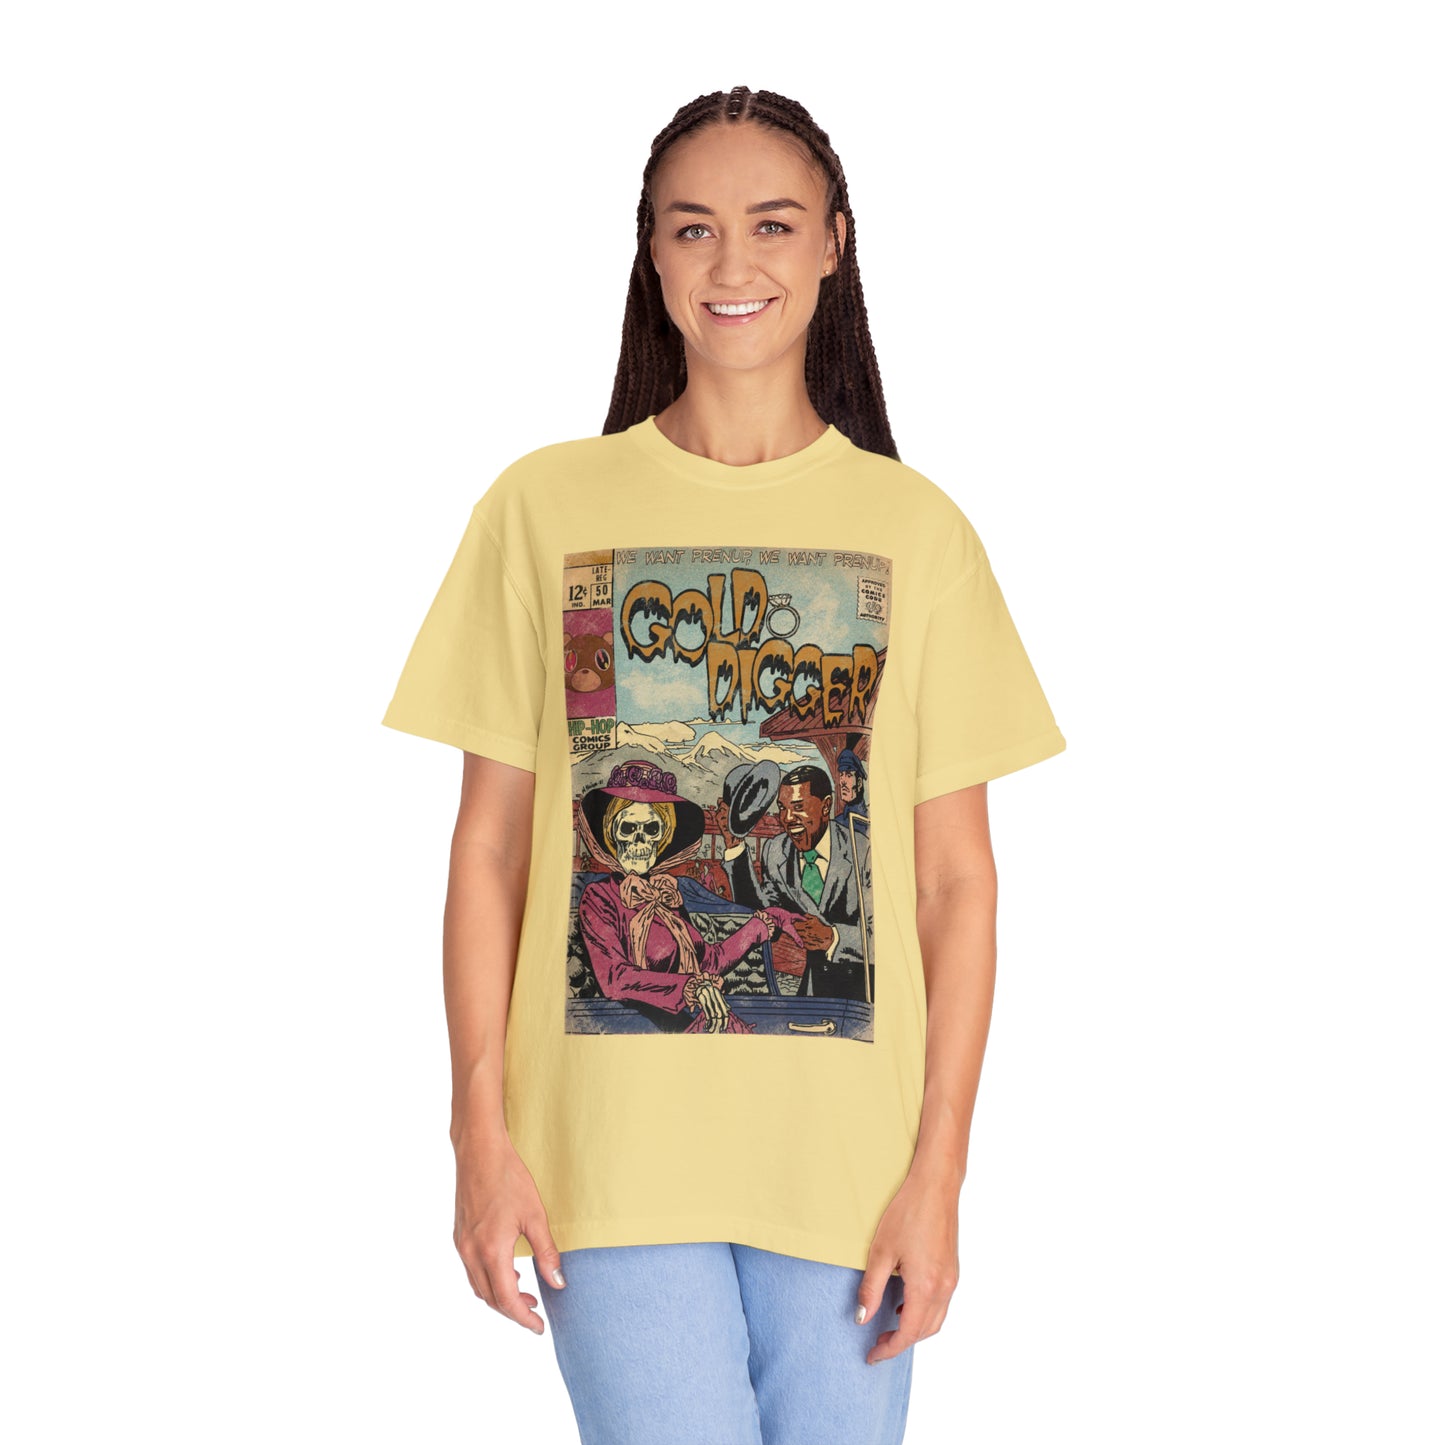 Kanye West - Gold Digger - Unisex Comfort Colors T-shirt